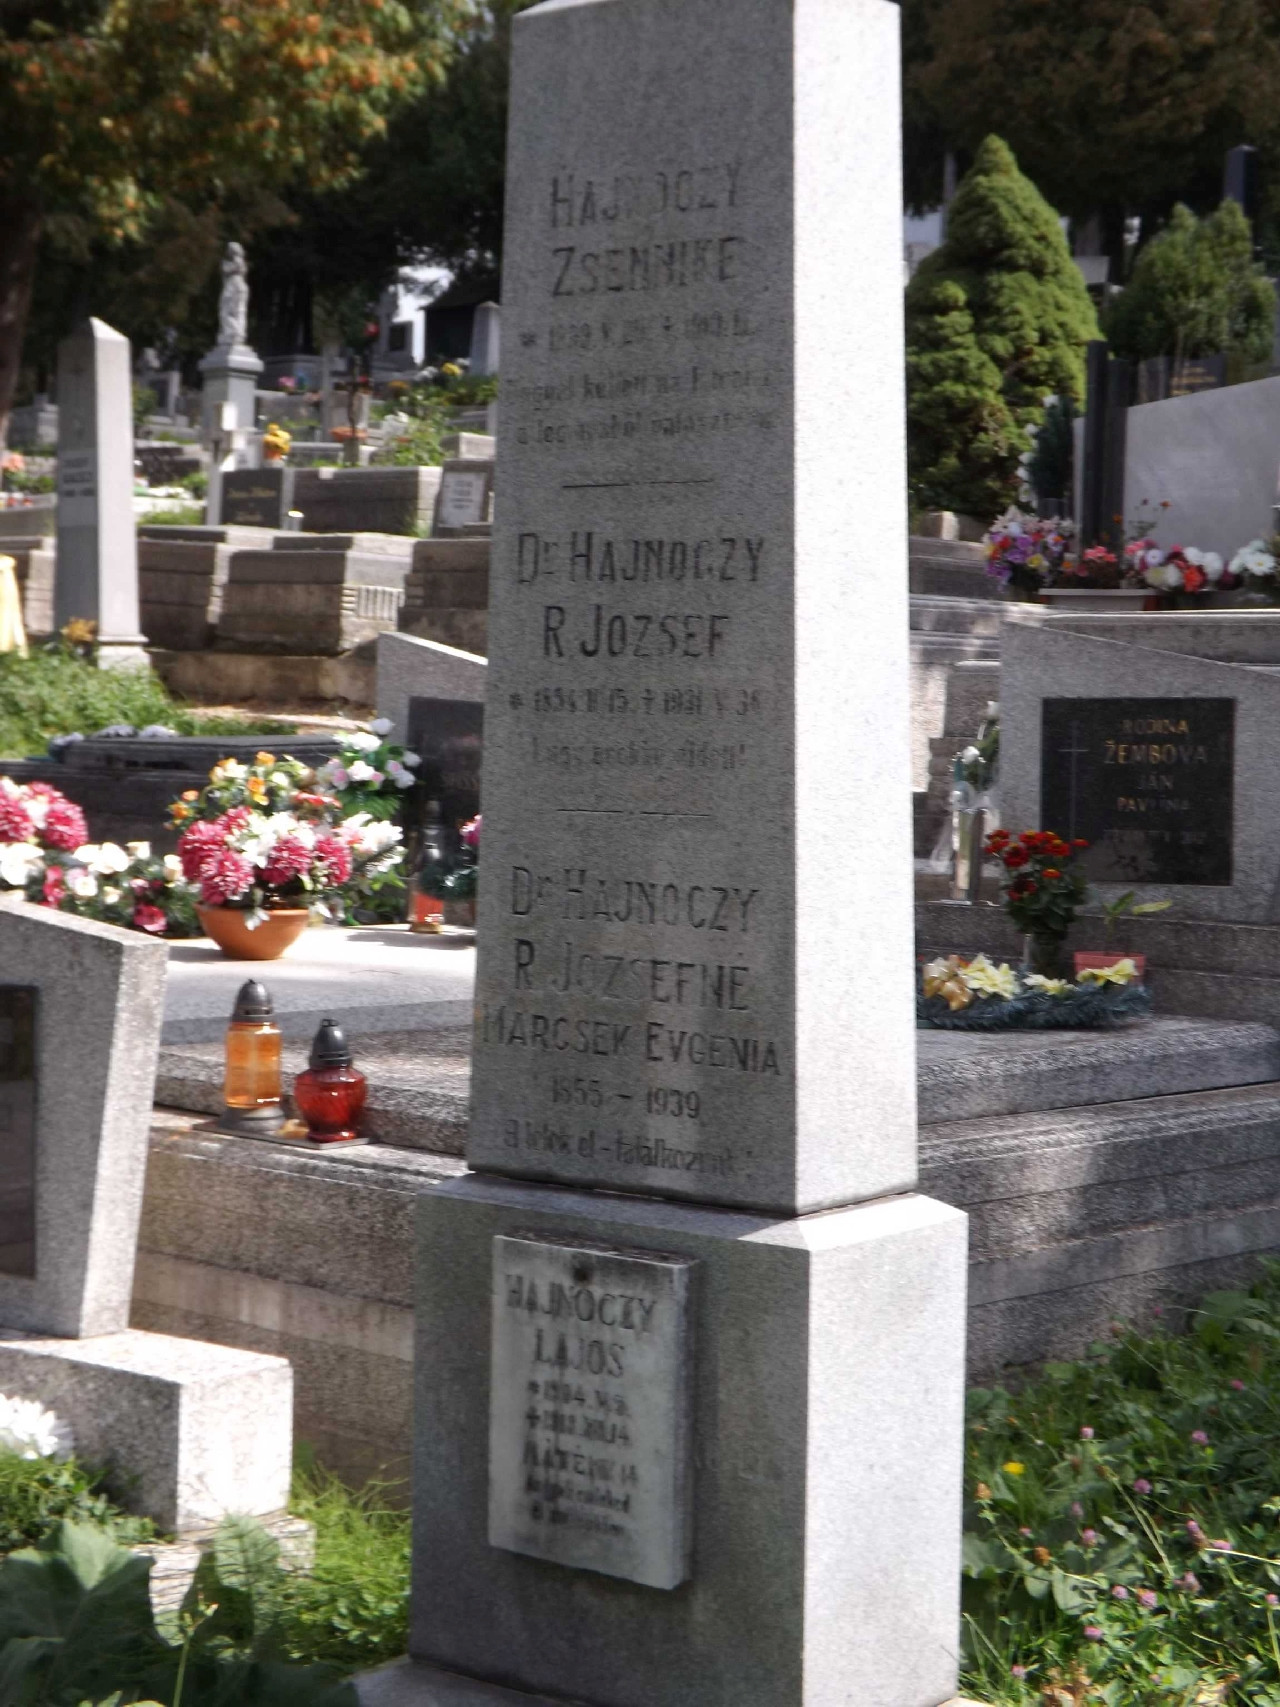 Hajnóczy R.József családi sírkövét az utódok átvitték az evangélikus temetőből a katolikus temetőbe